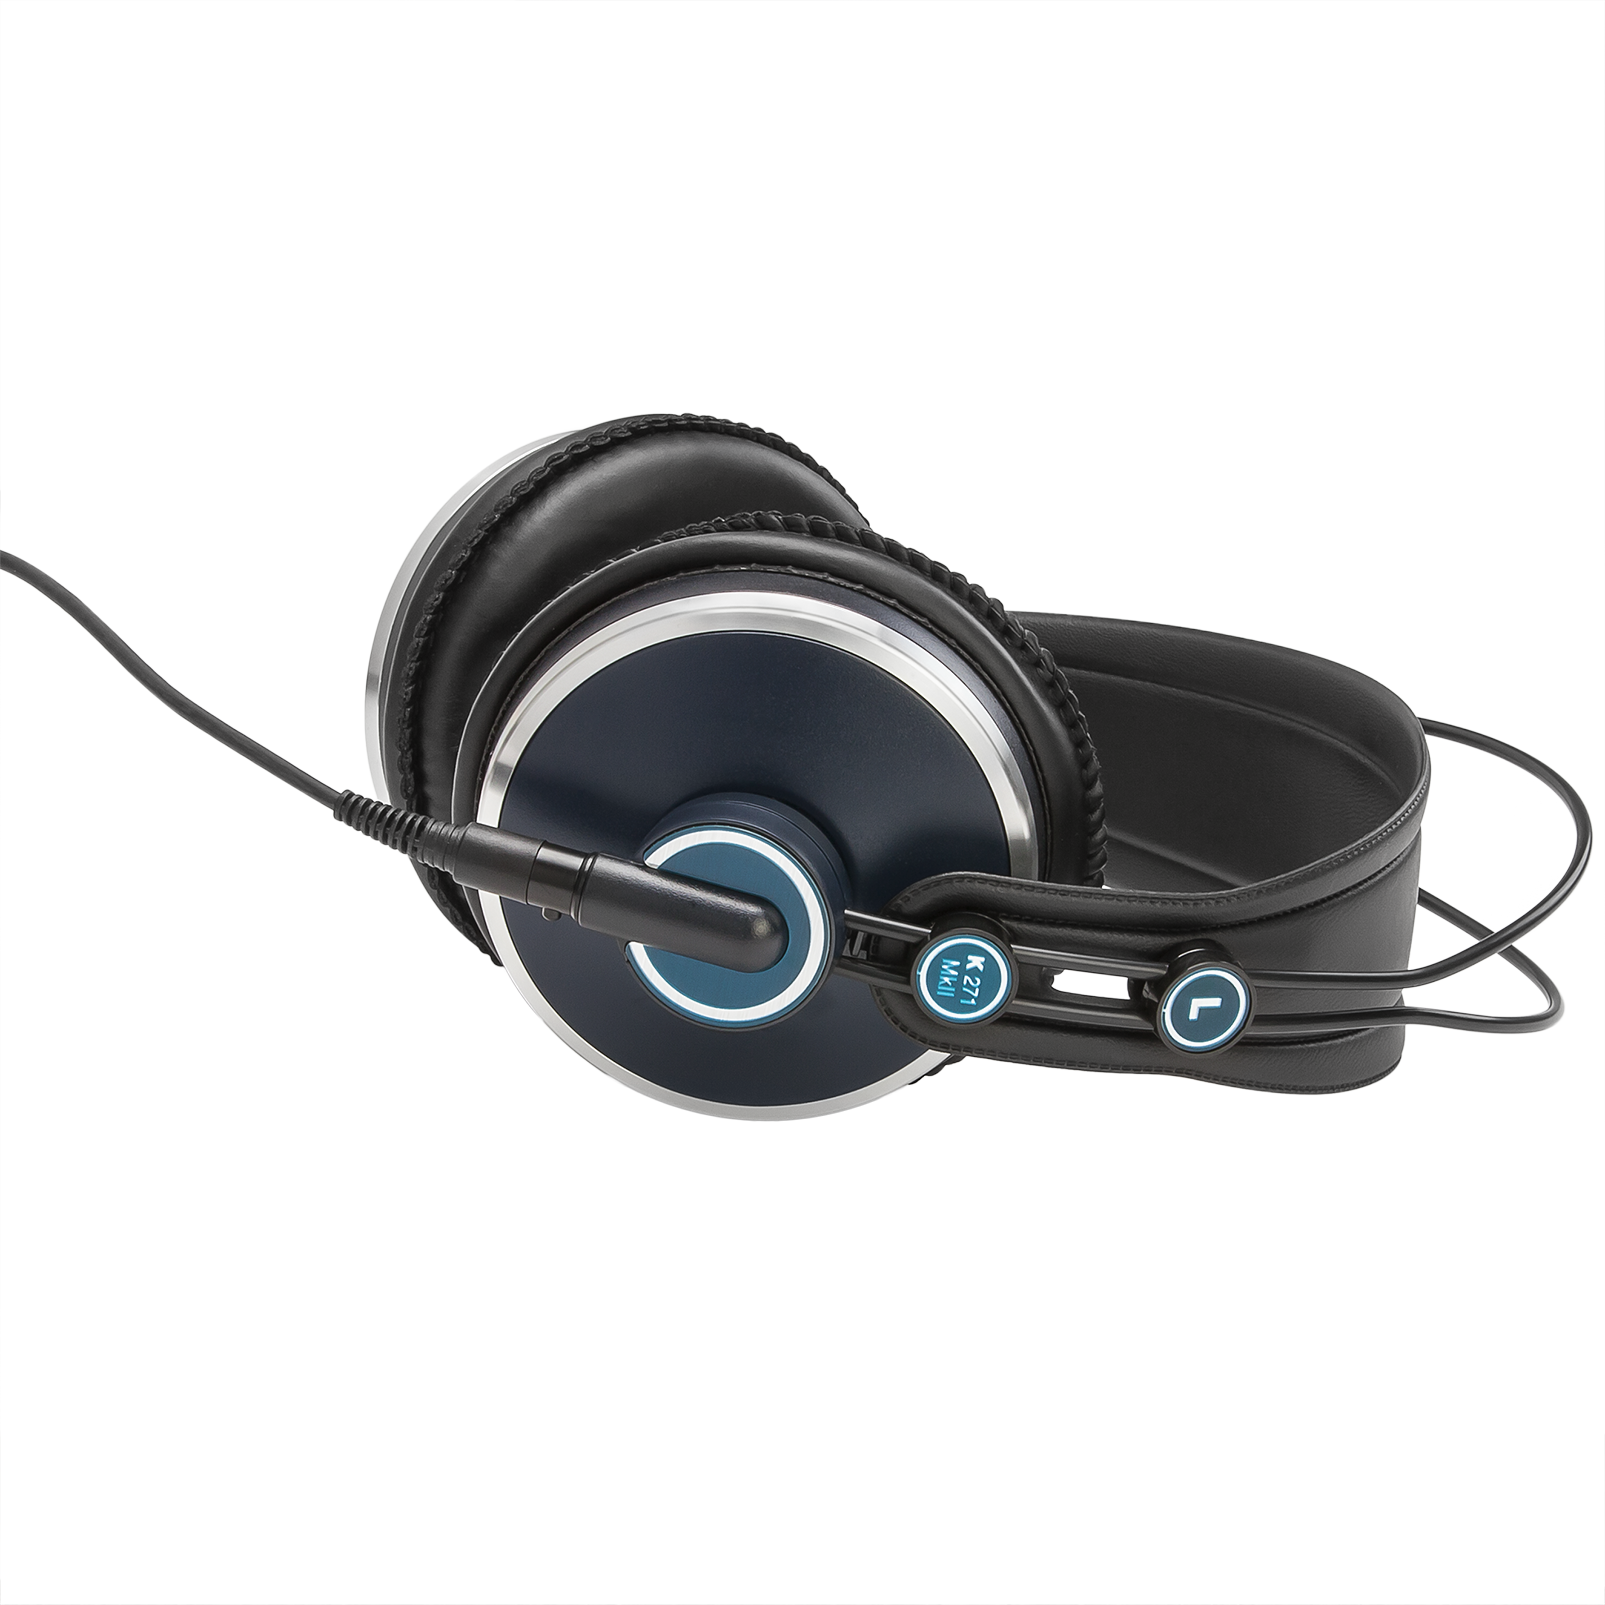 K271 MKII - Black - Professional studio headphones - Detailshot 1